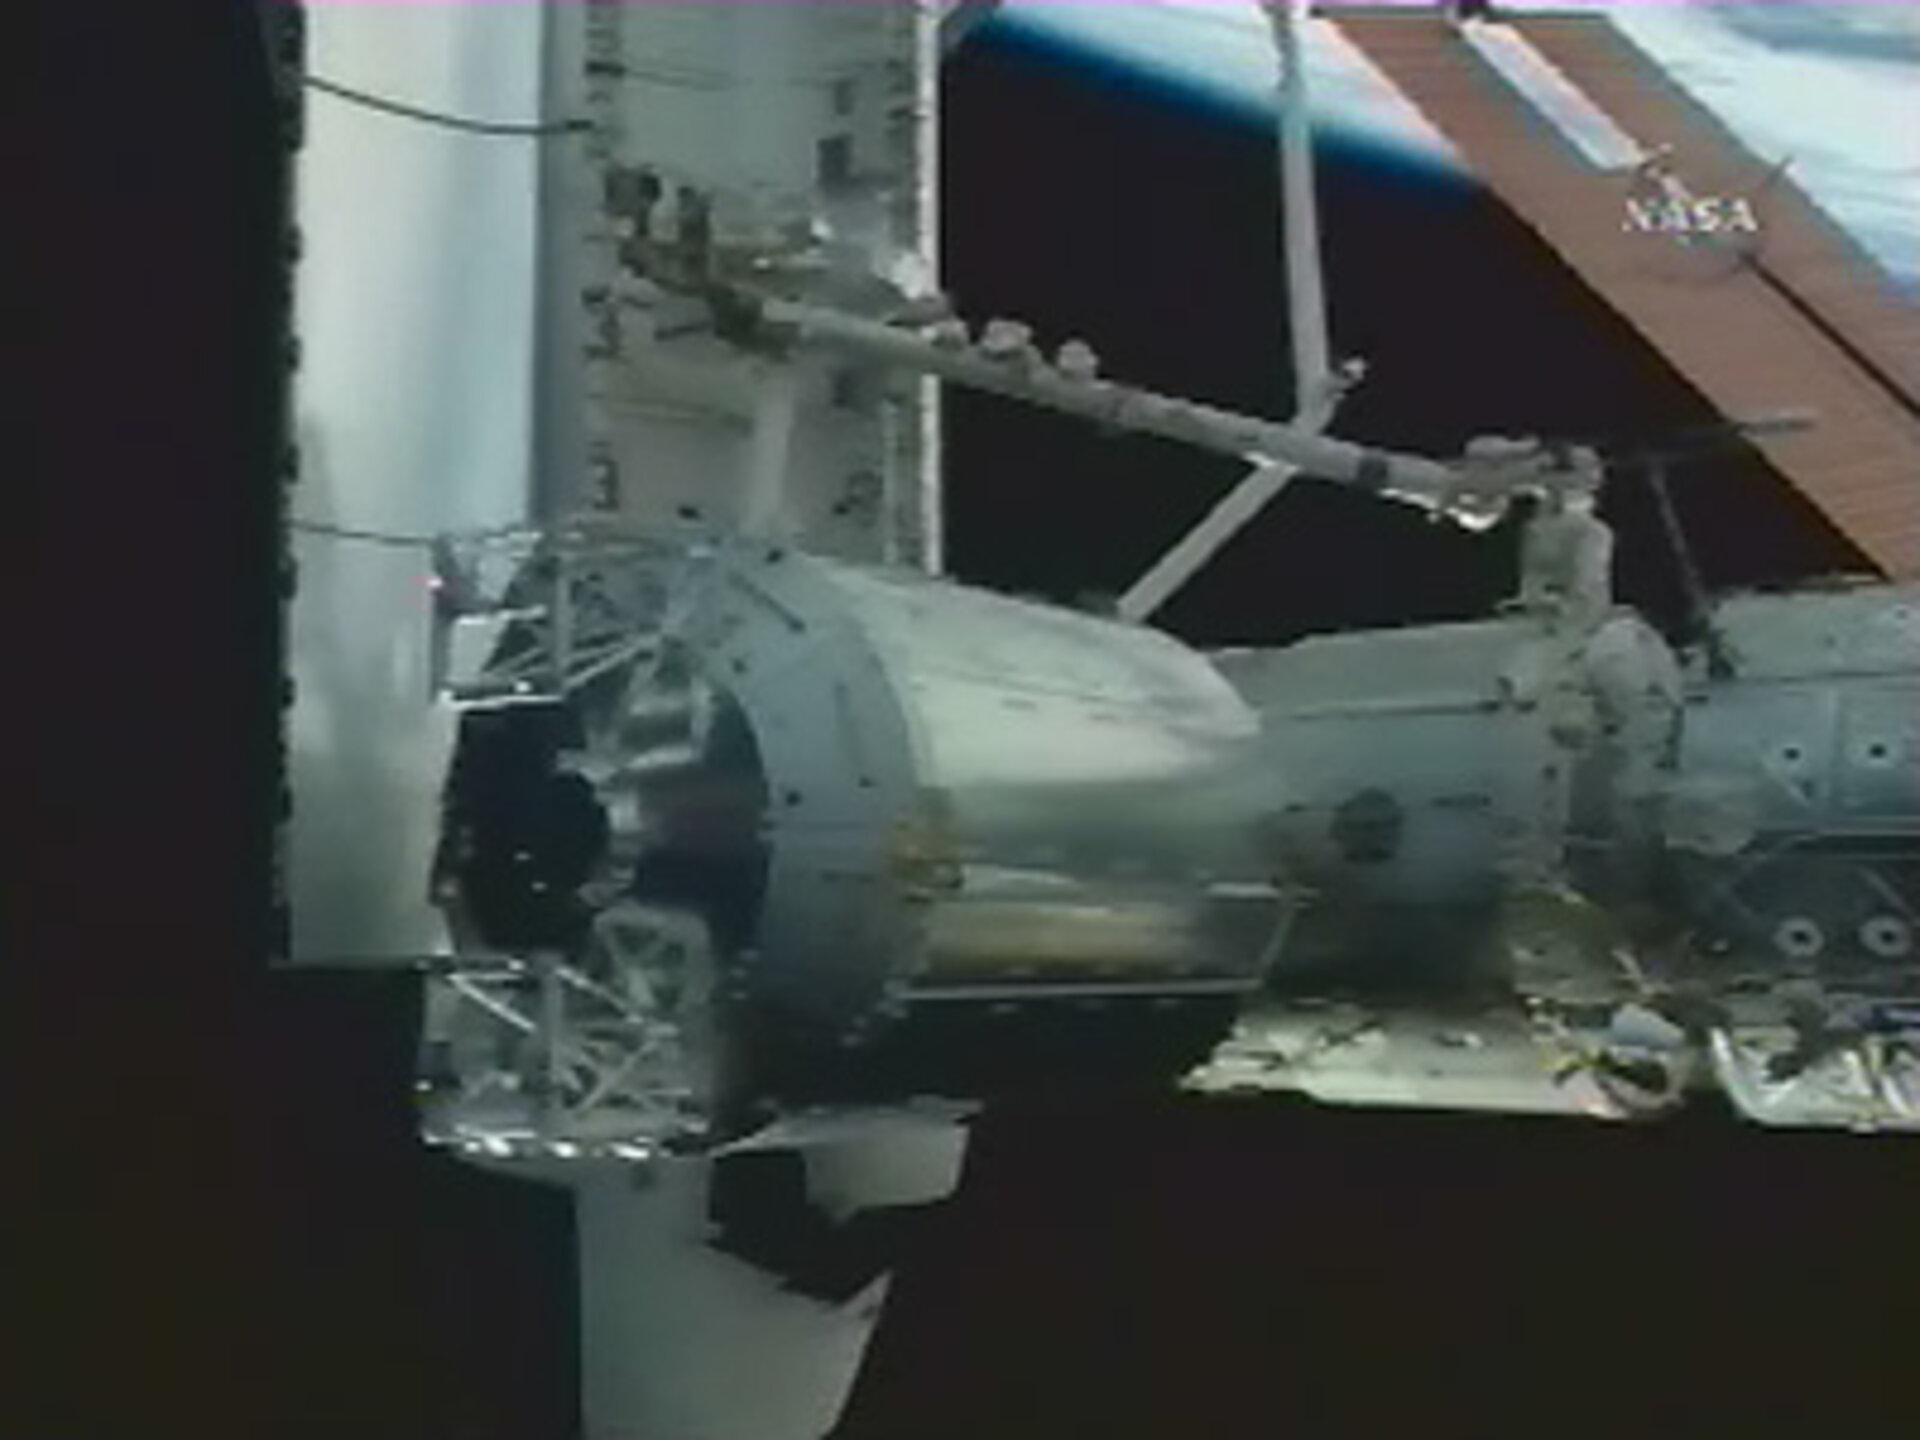 Columbus a été officiellement arrimé à l'ISS à 22h44 CET